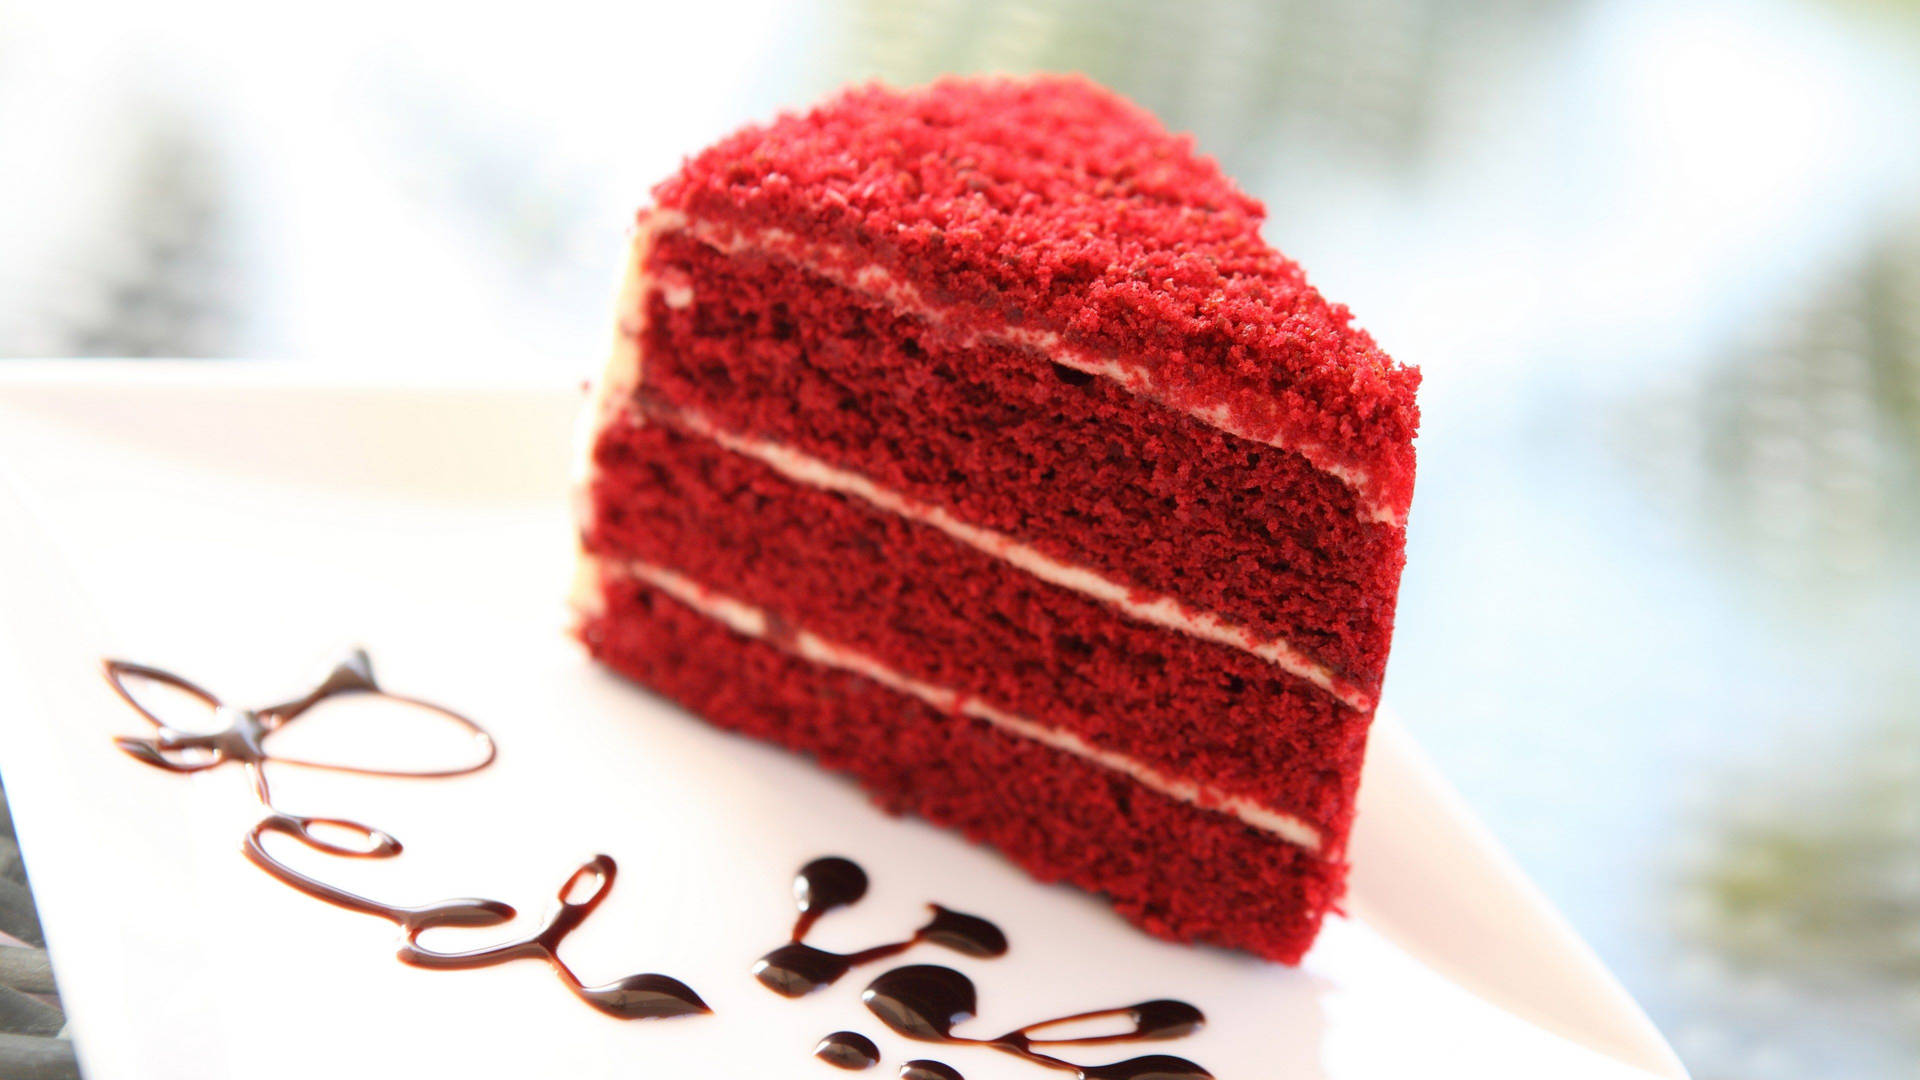 Red Velvet Cake Slice Background